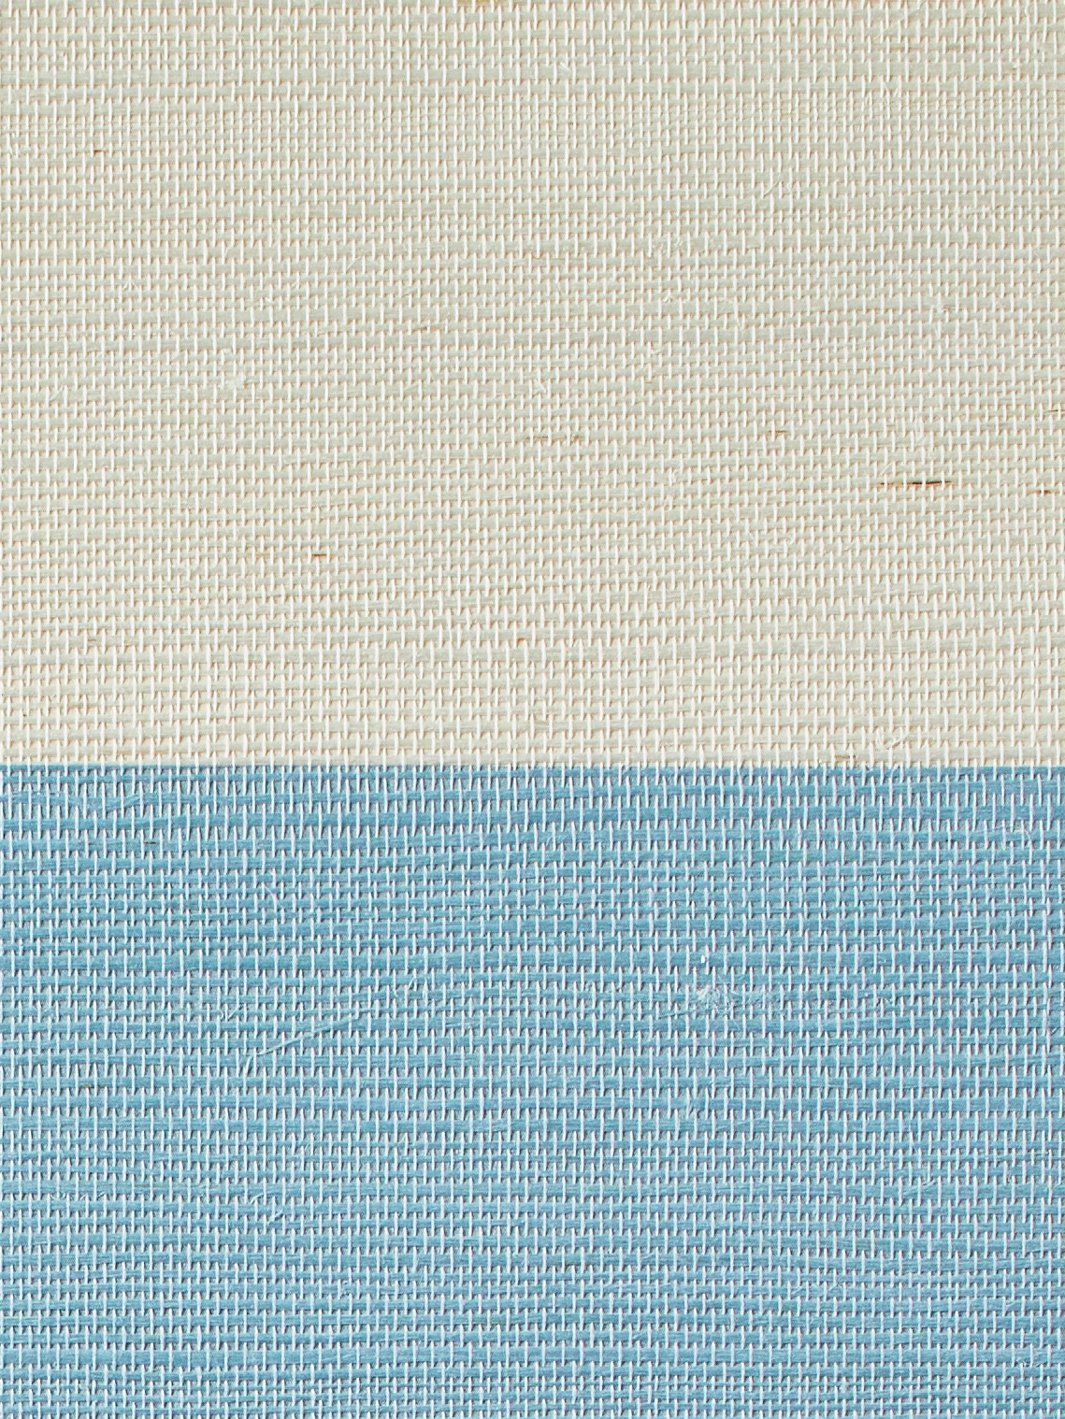 'Wide Stripe' Grasscloth' Wallpaper by Wallshoppe - Cornflower